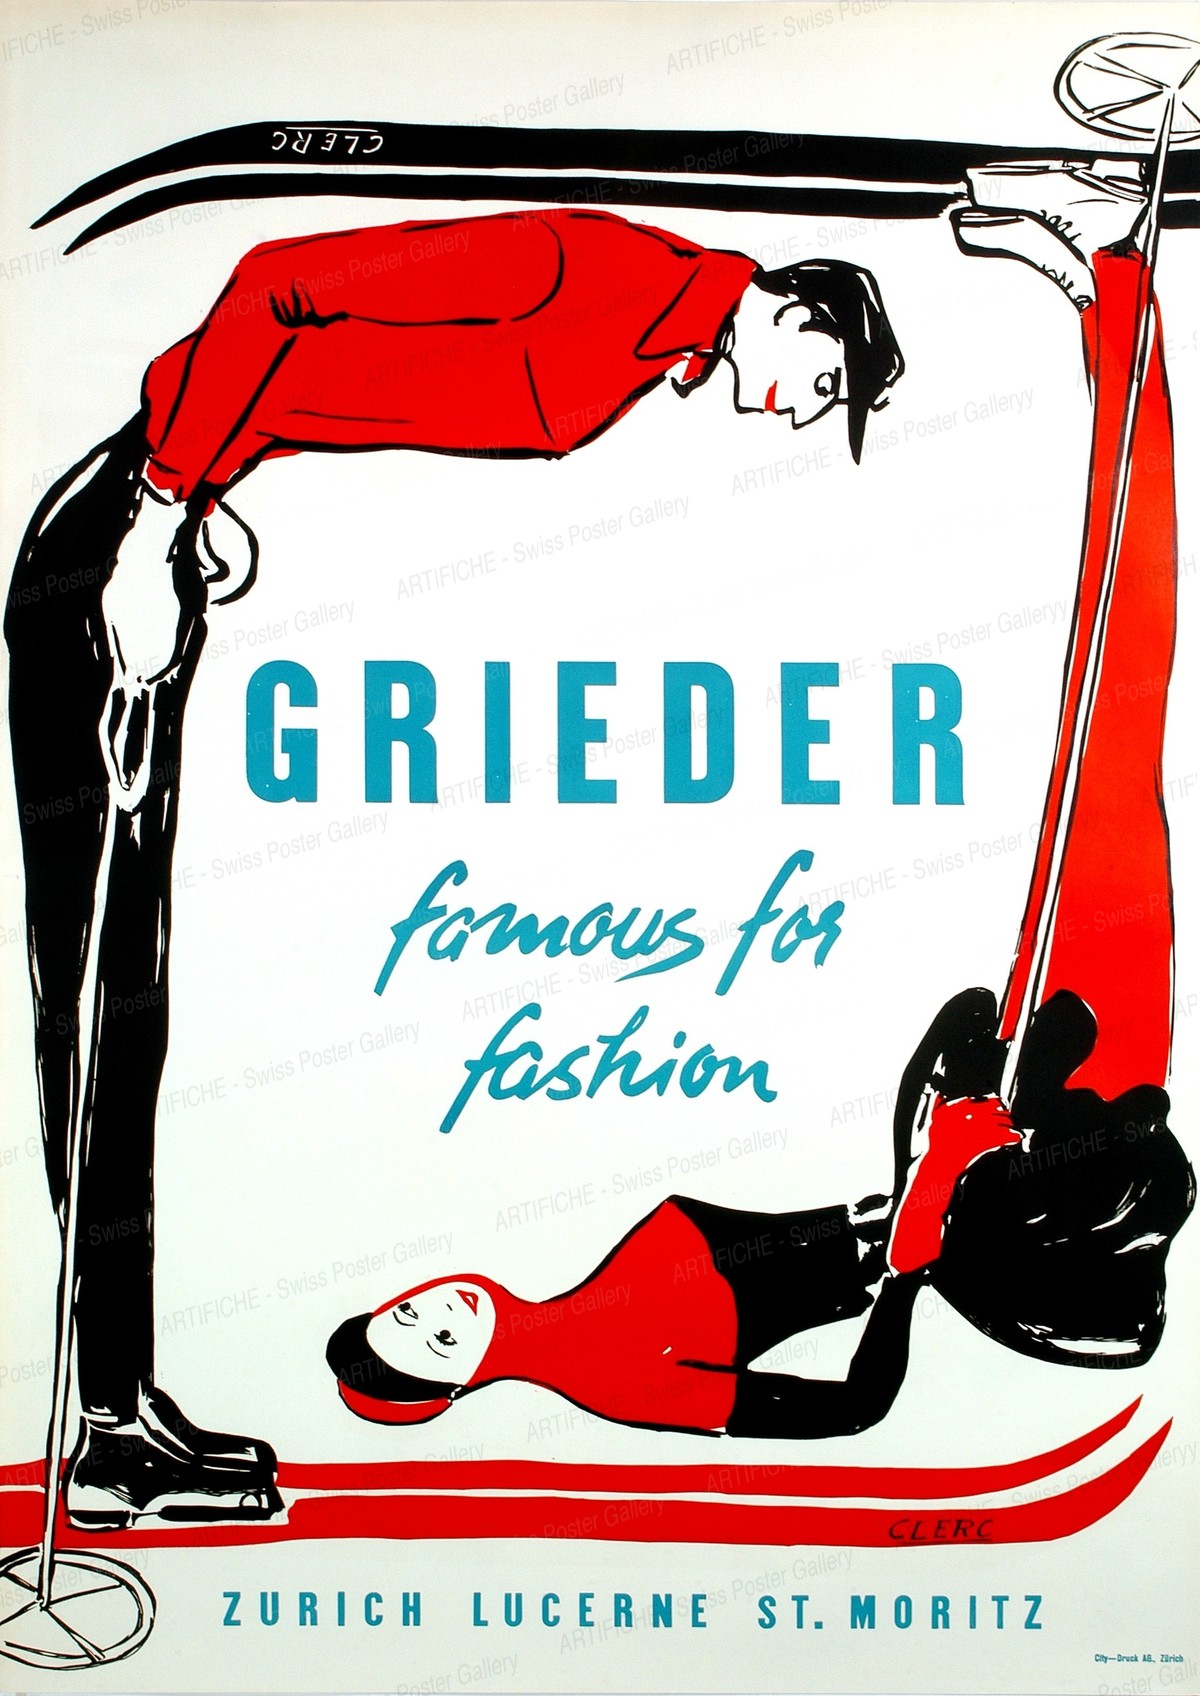 GRIEDER- famous for fashion – ZURICH LUCERNE ST. MORITZ, Clerc